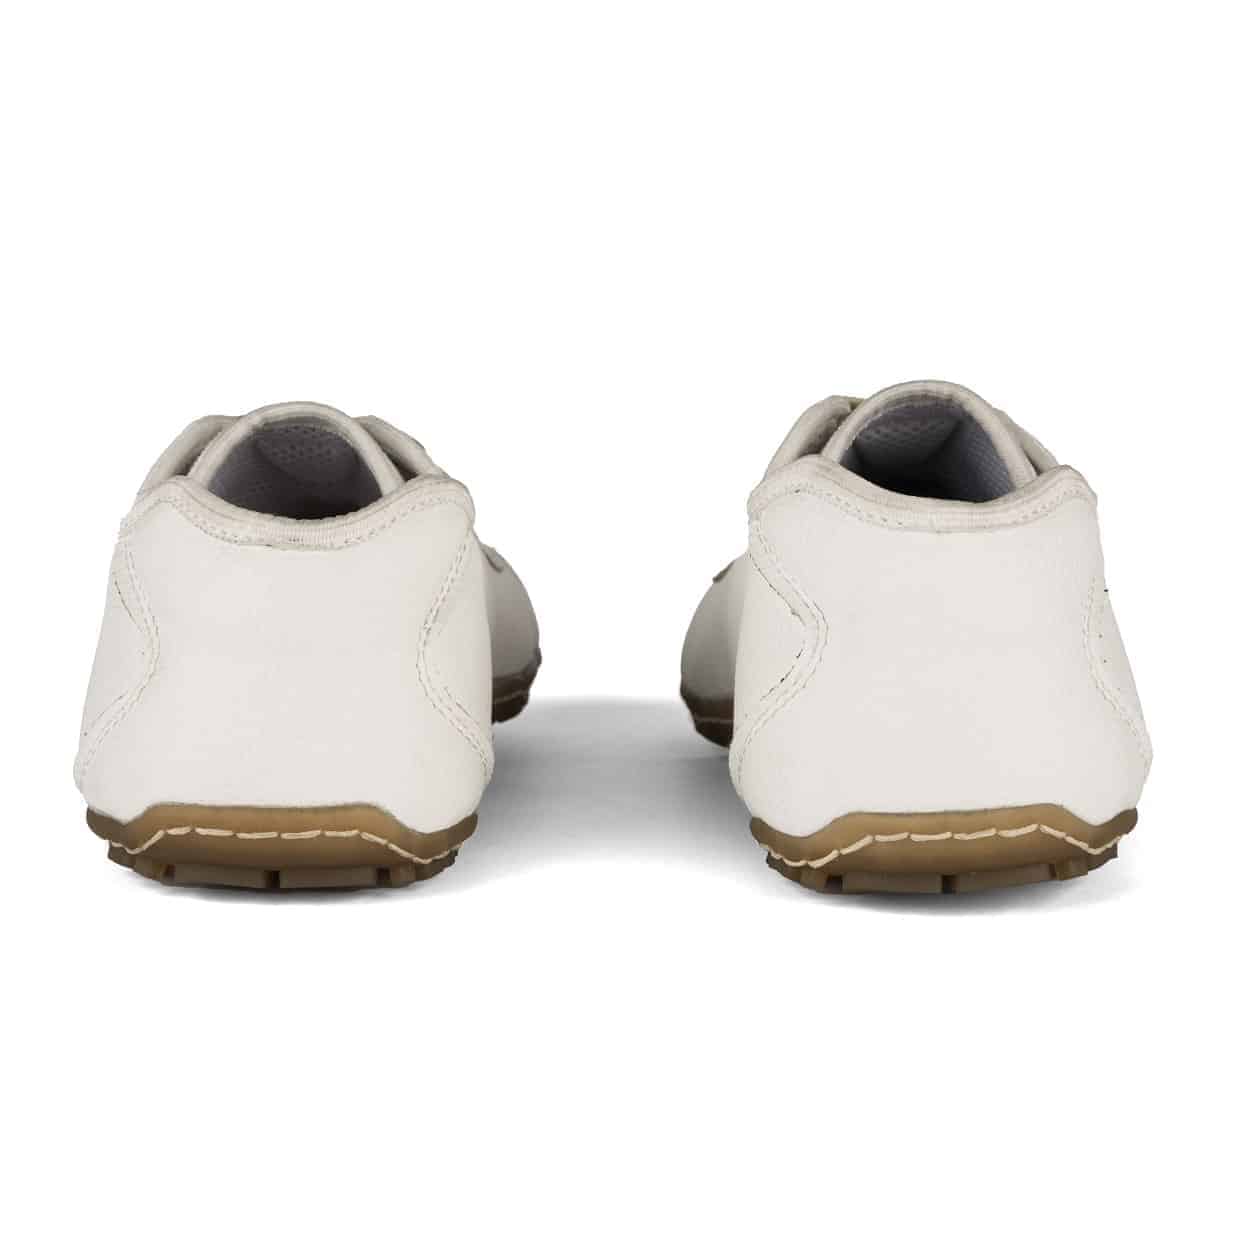 Barefoot, calzado minimalista - Koena Salud